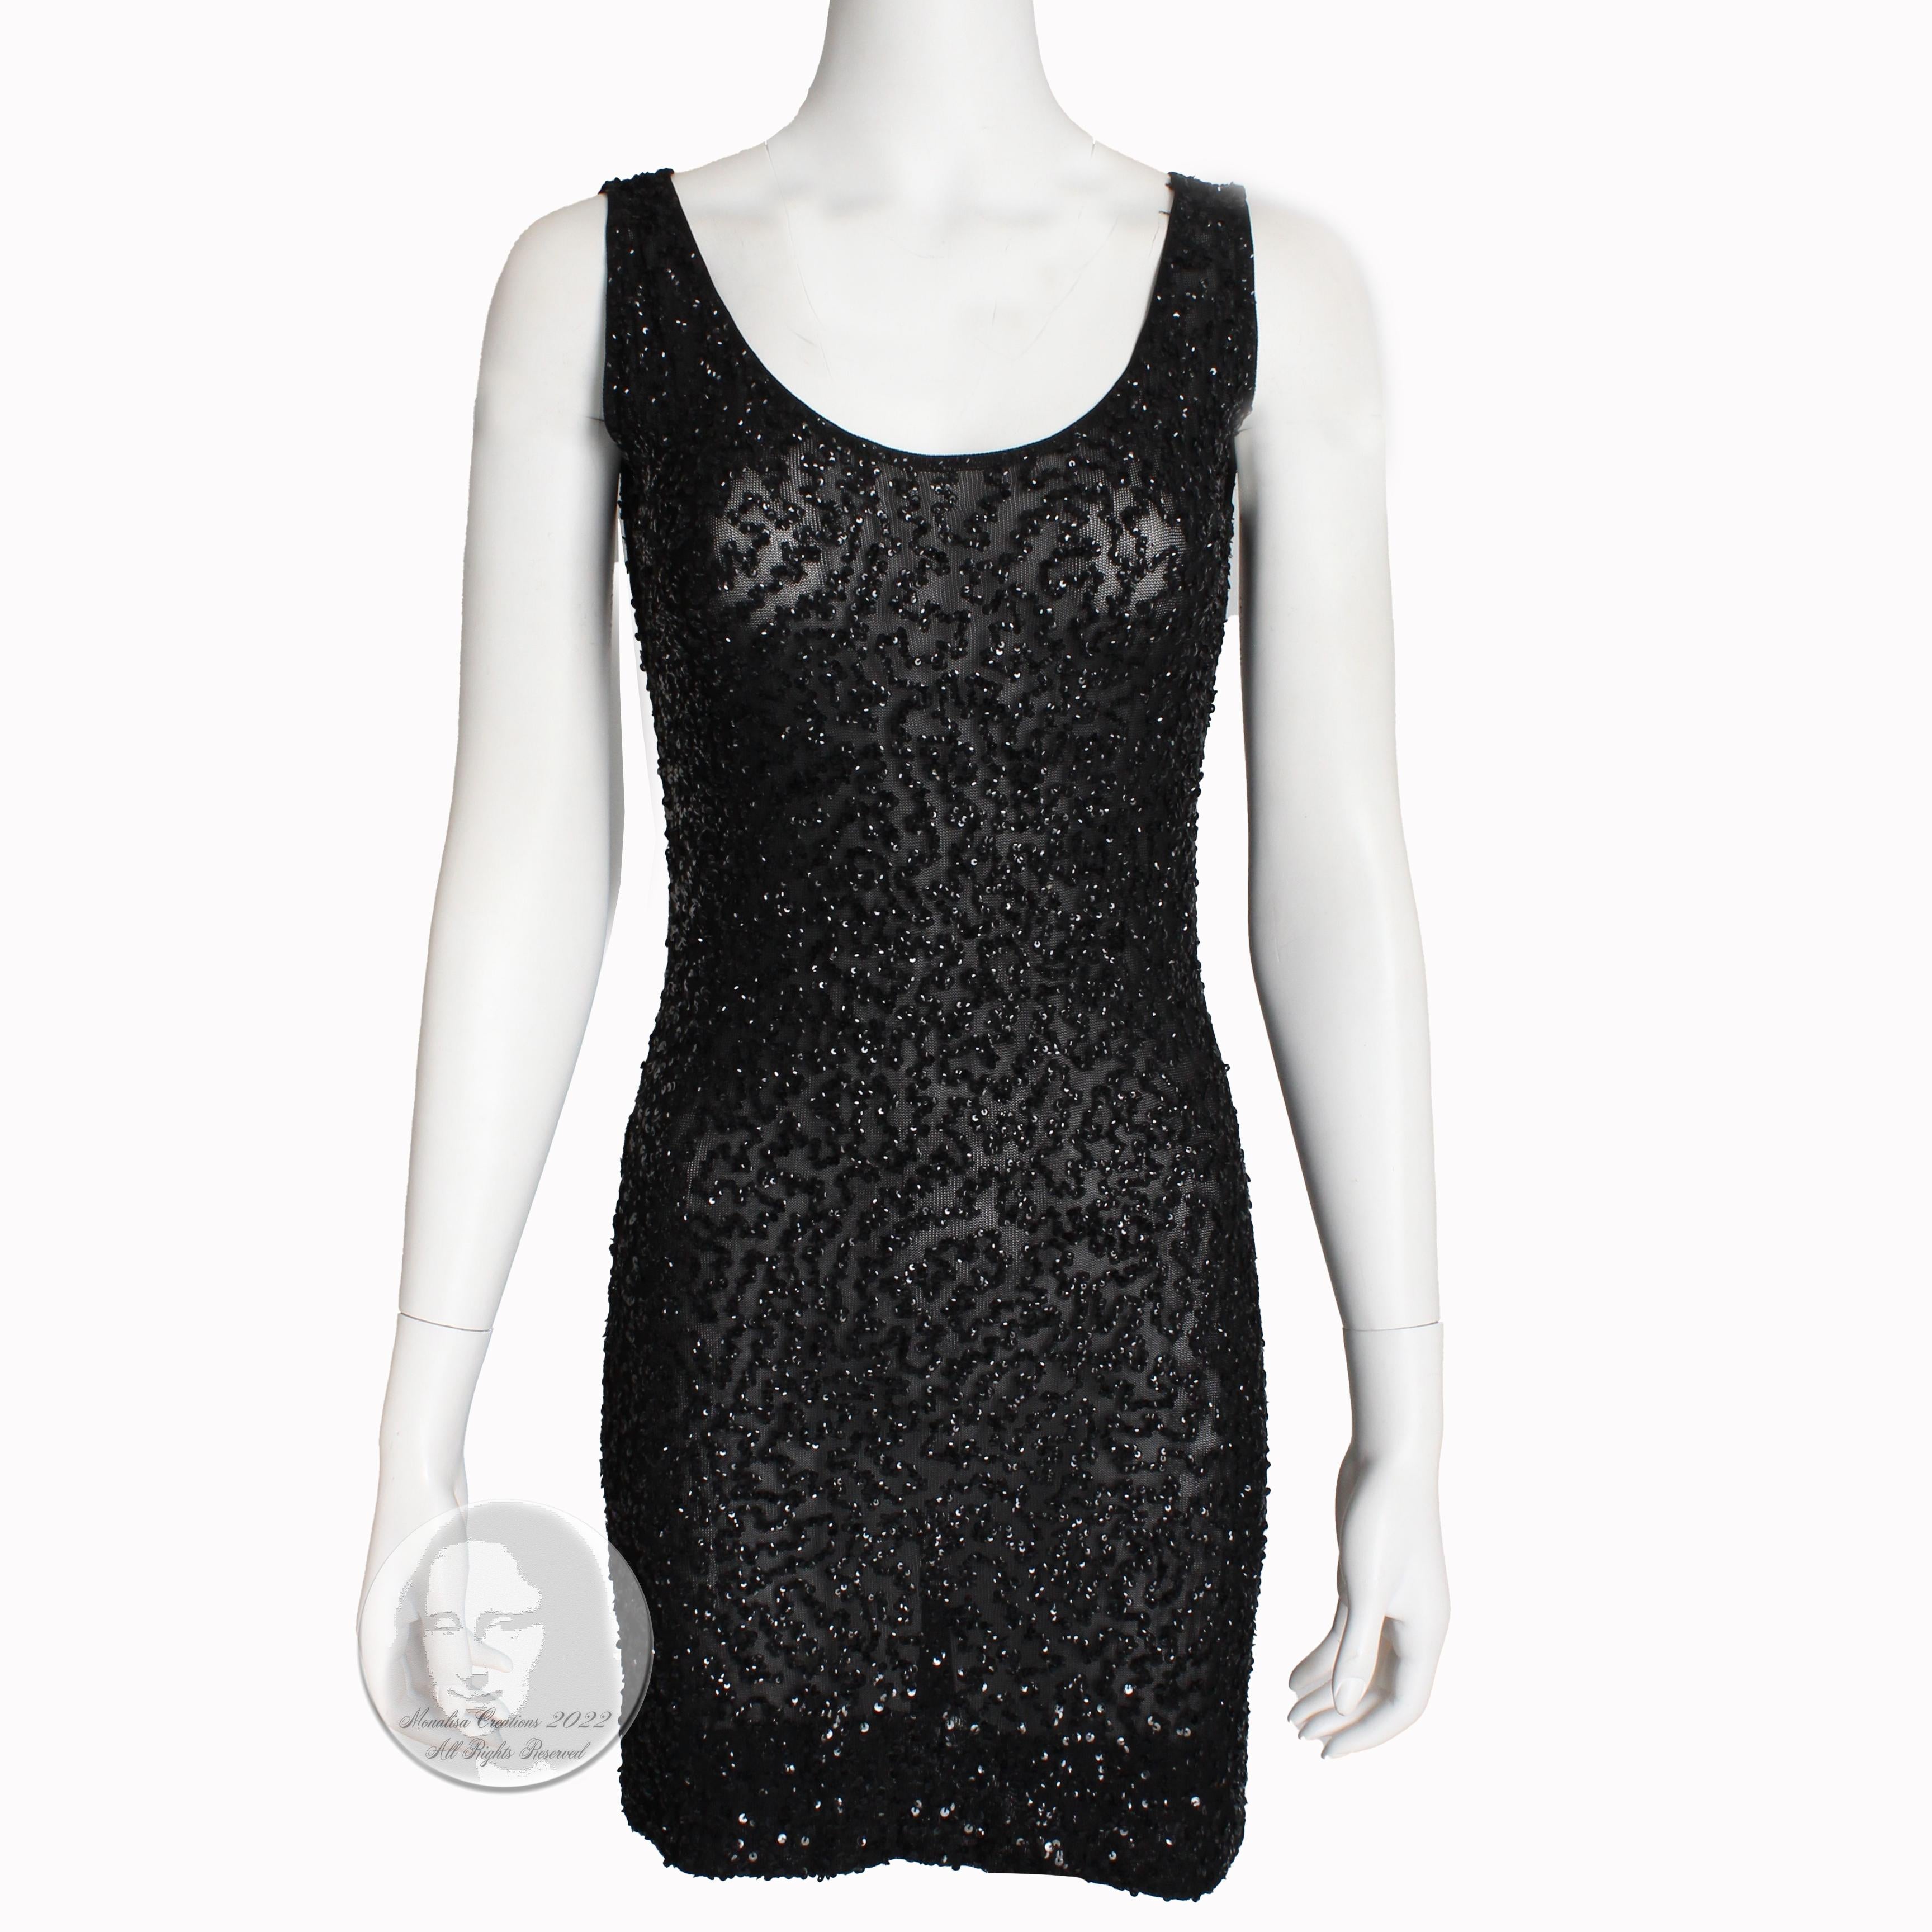 Donna Karan New York 'Naked' Dress Black Sheer Knit Sequins 90s Vintage Size P 1